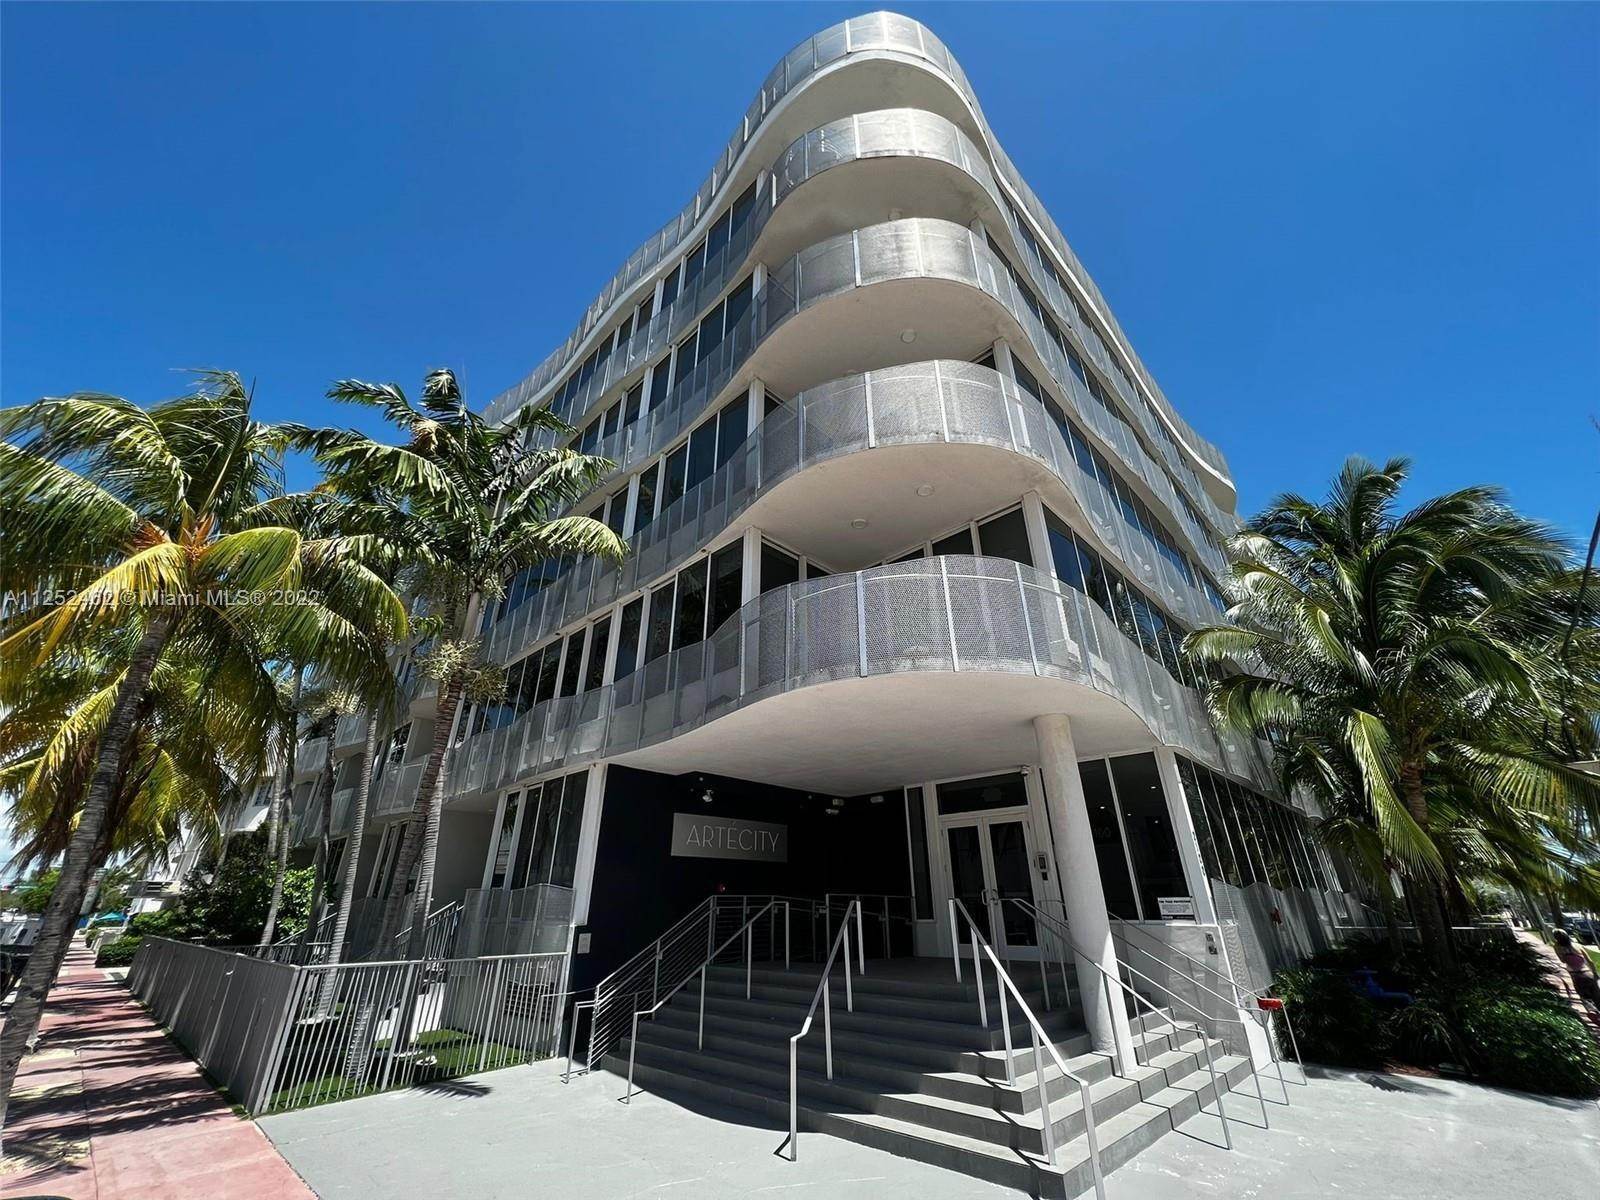 Condominium for Sale at City Center, Miami Beach, FL 33139